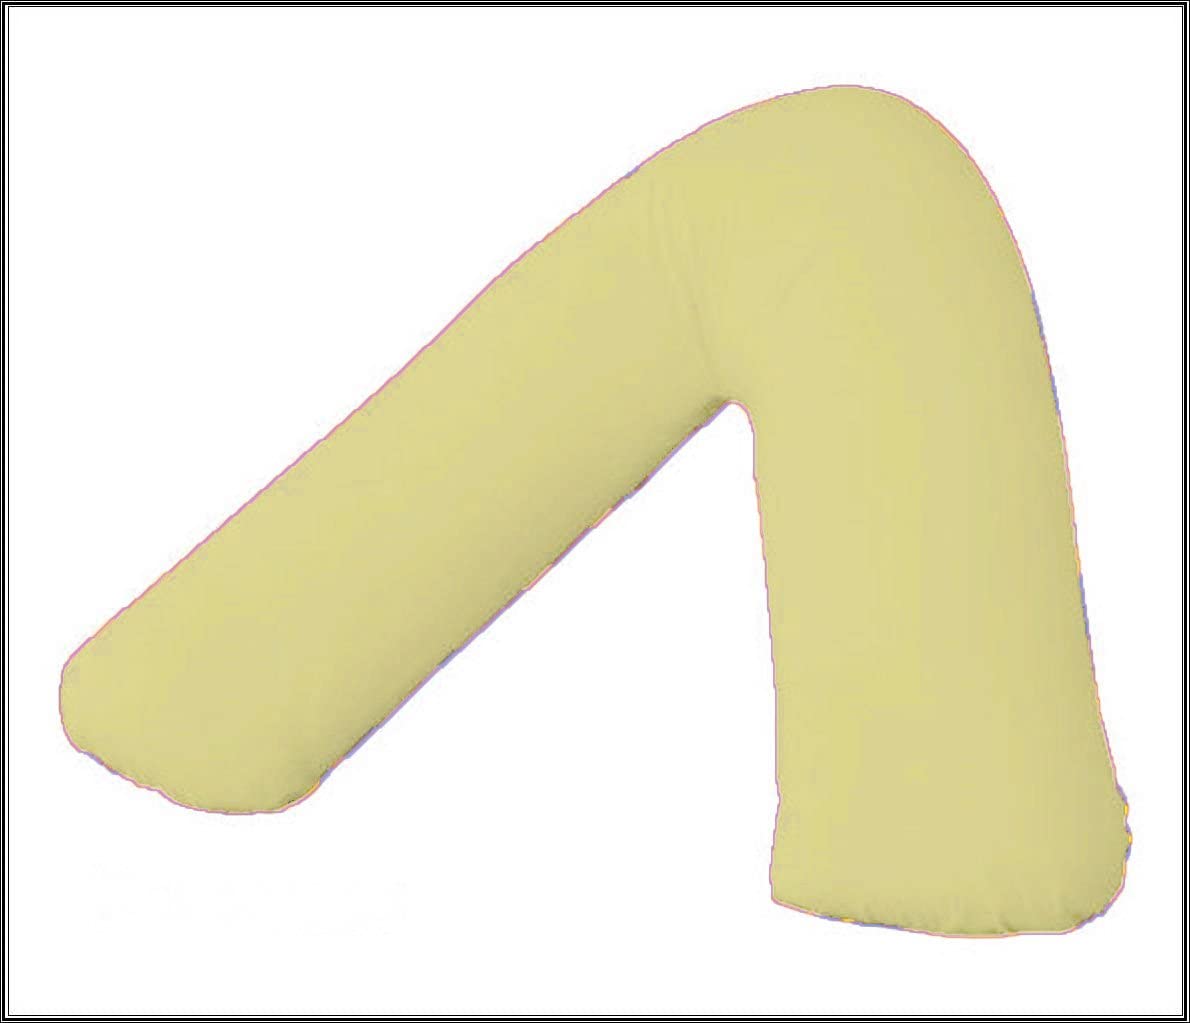 AmigoZone Plain Polycotton Back & Neck Support V Shaped Pillowcase